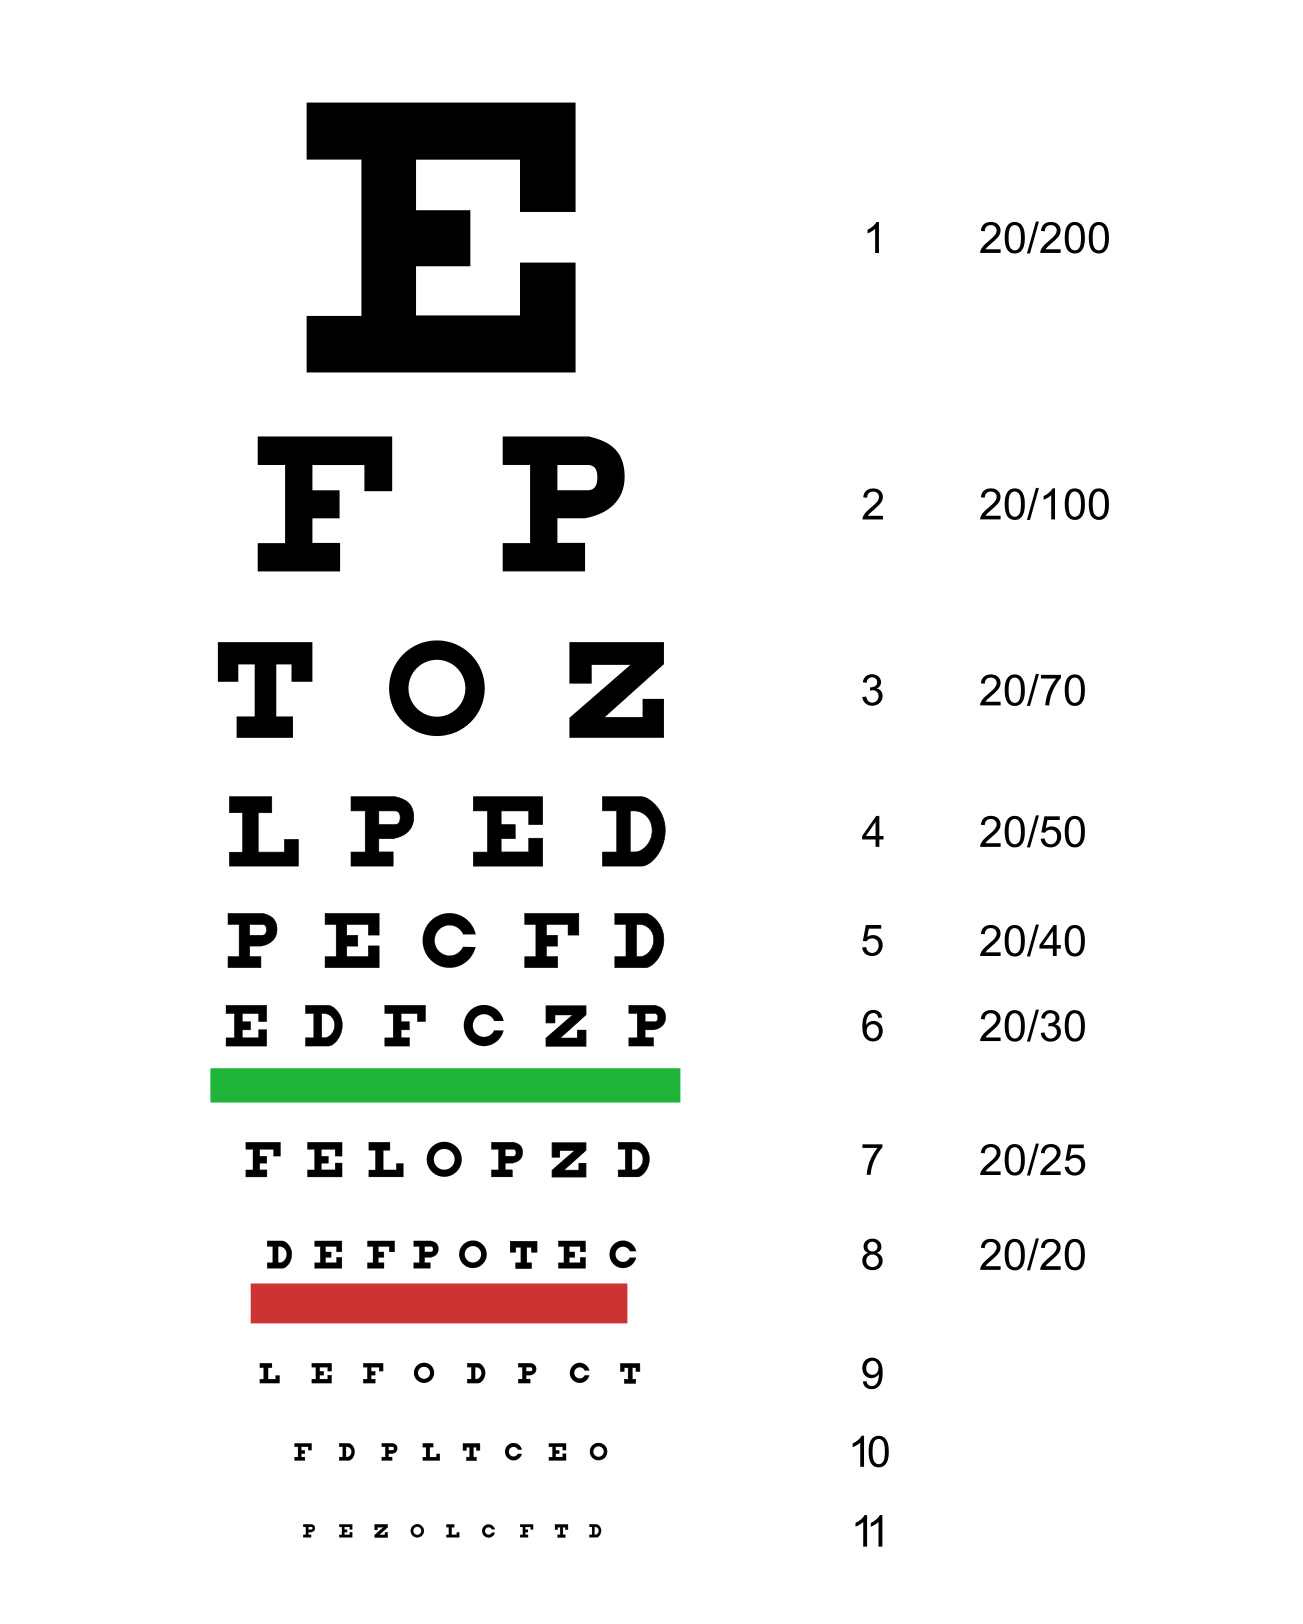 dmv eye charts 105365 flickr photo sharing - dmv eye test at wegmans | eye test dmv chart